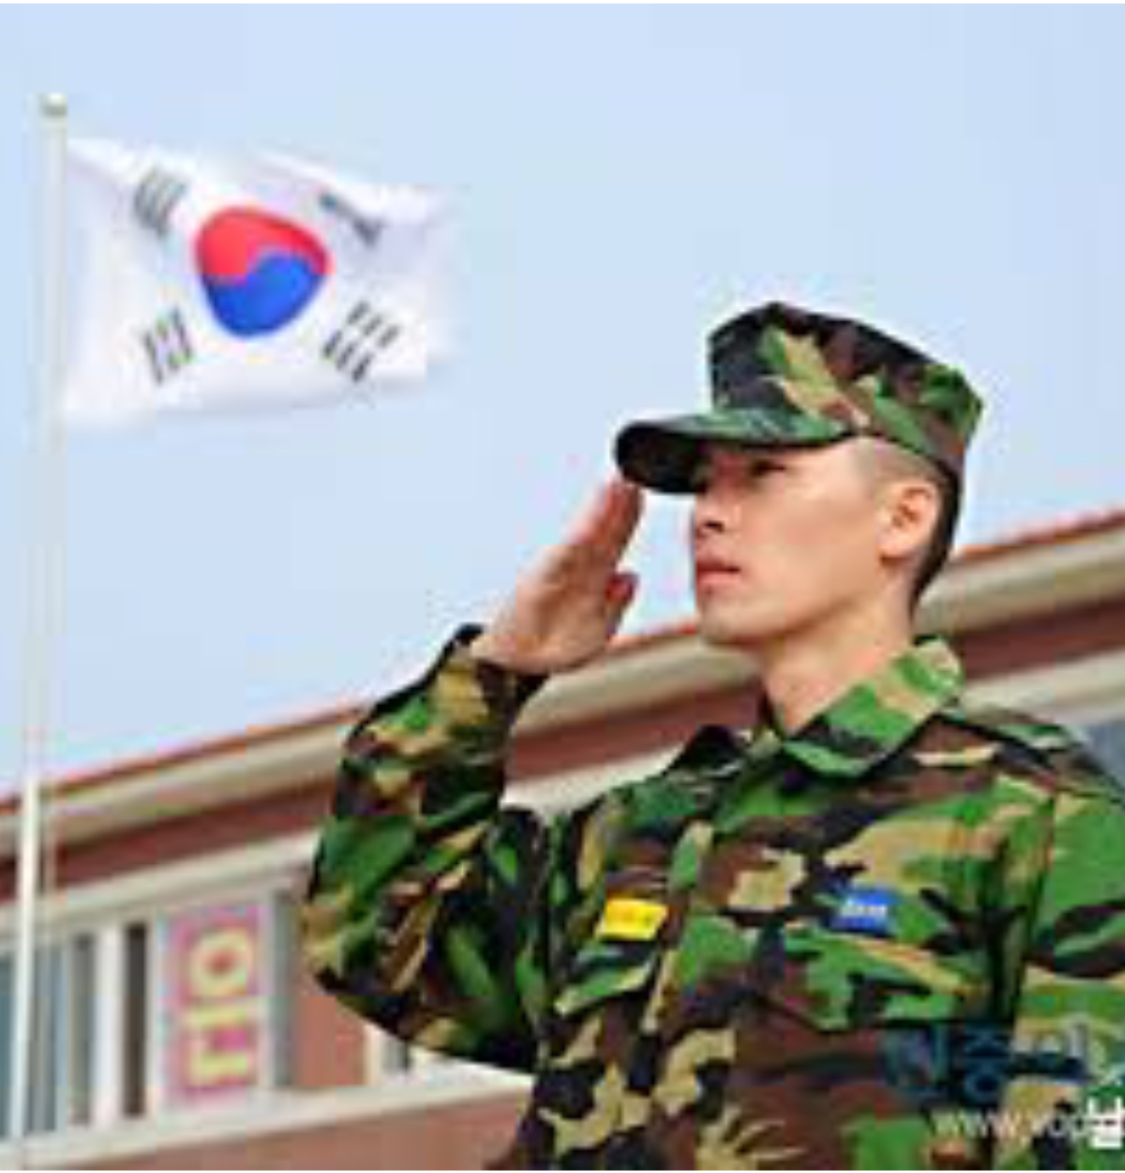 Güney Kore’de Güvenlik Güçleri-1: Askeriye